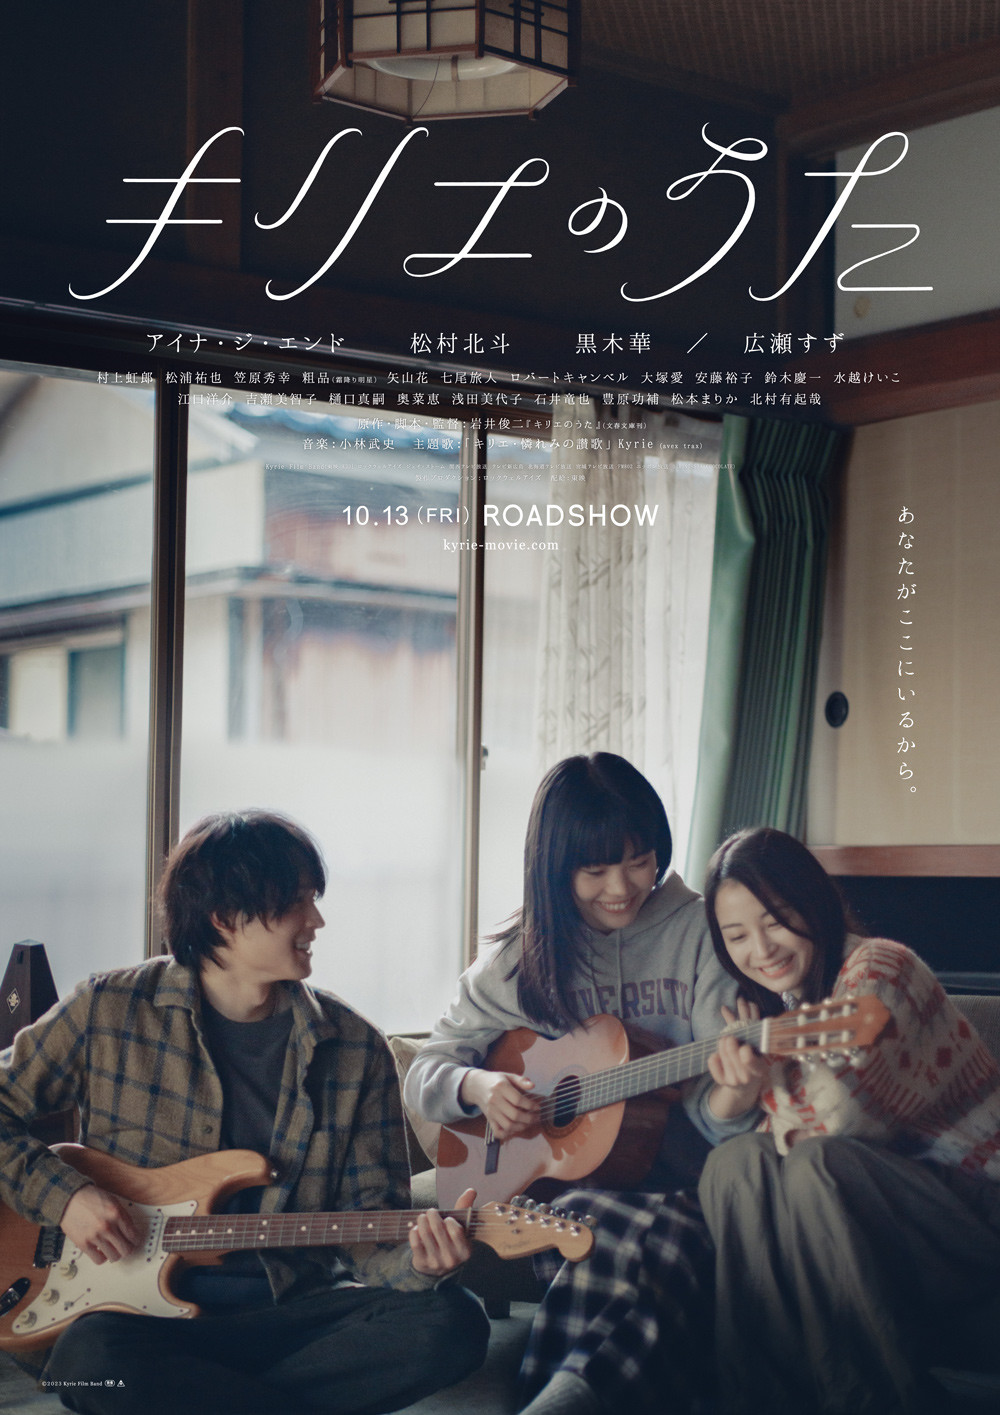 【卒業生の活躍】ジャズ・ポピュラー学科卒業生 ドラマーの松浦千昇さんが話題の音楽映画『キリエのうた』に出演します